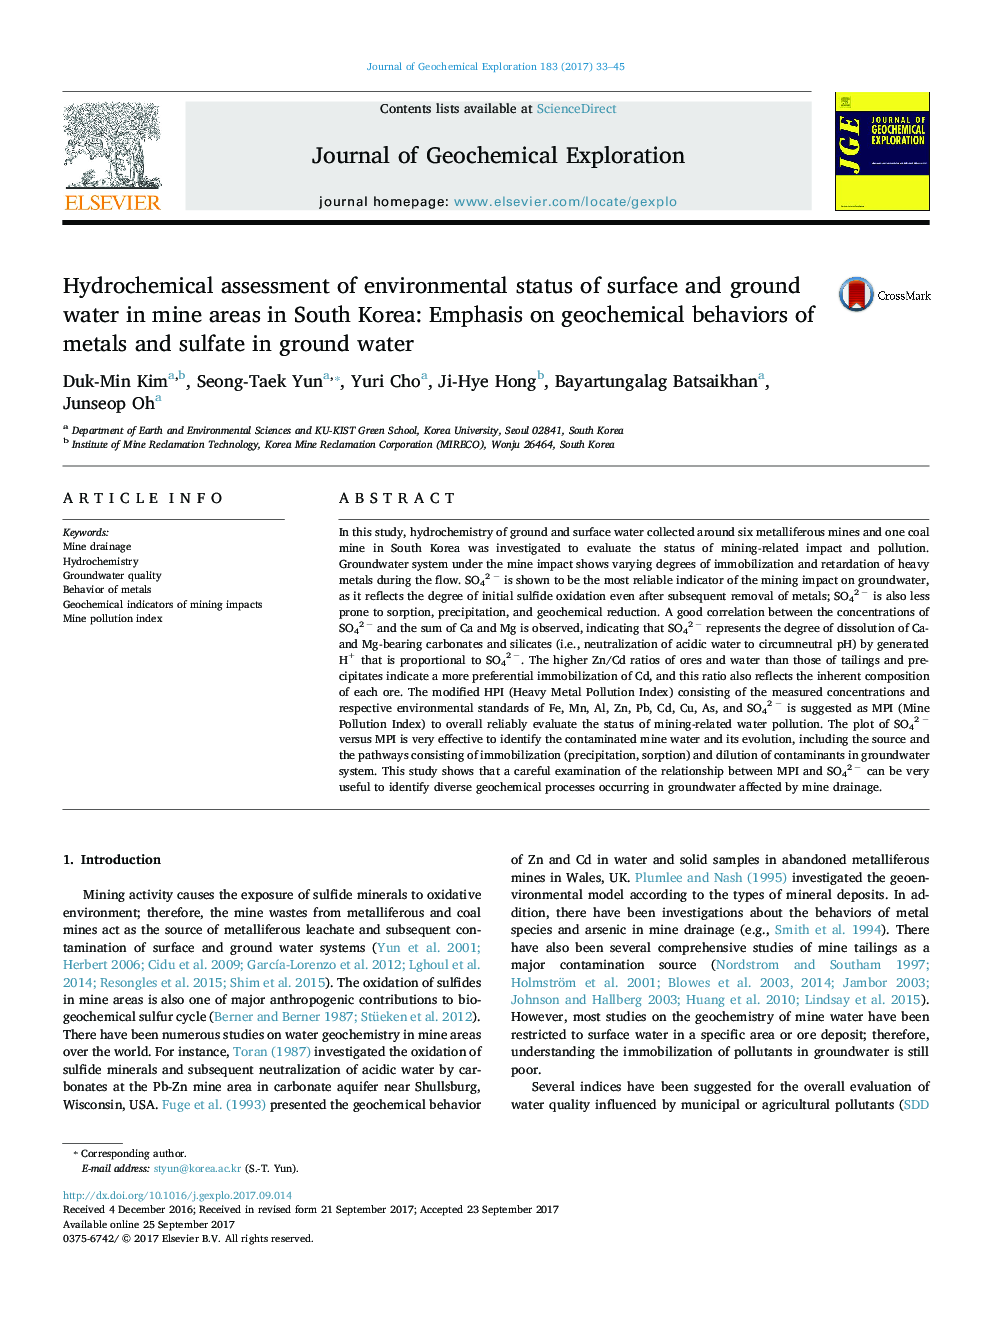 ارزیابی هیدرو شیمیایی وضعیت زیست محیطی آبهای سطحی و زمین در مناطق معدن کره جنوبی: تاکید بر رفتار ژئوشیمیایی فلزات و سولفات در آب های زیرزمینی 